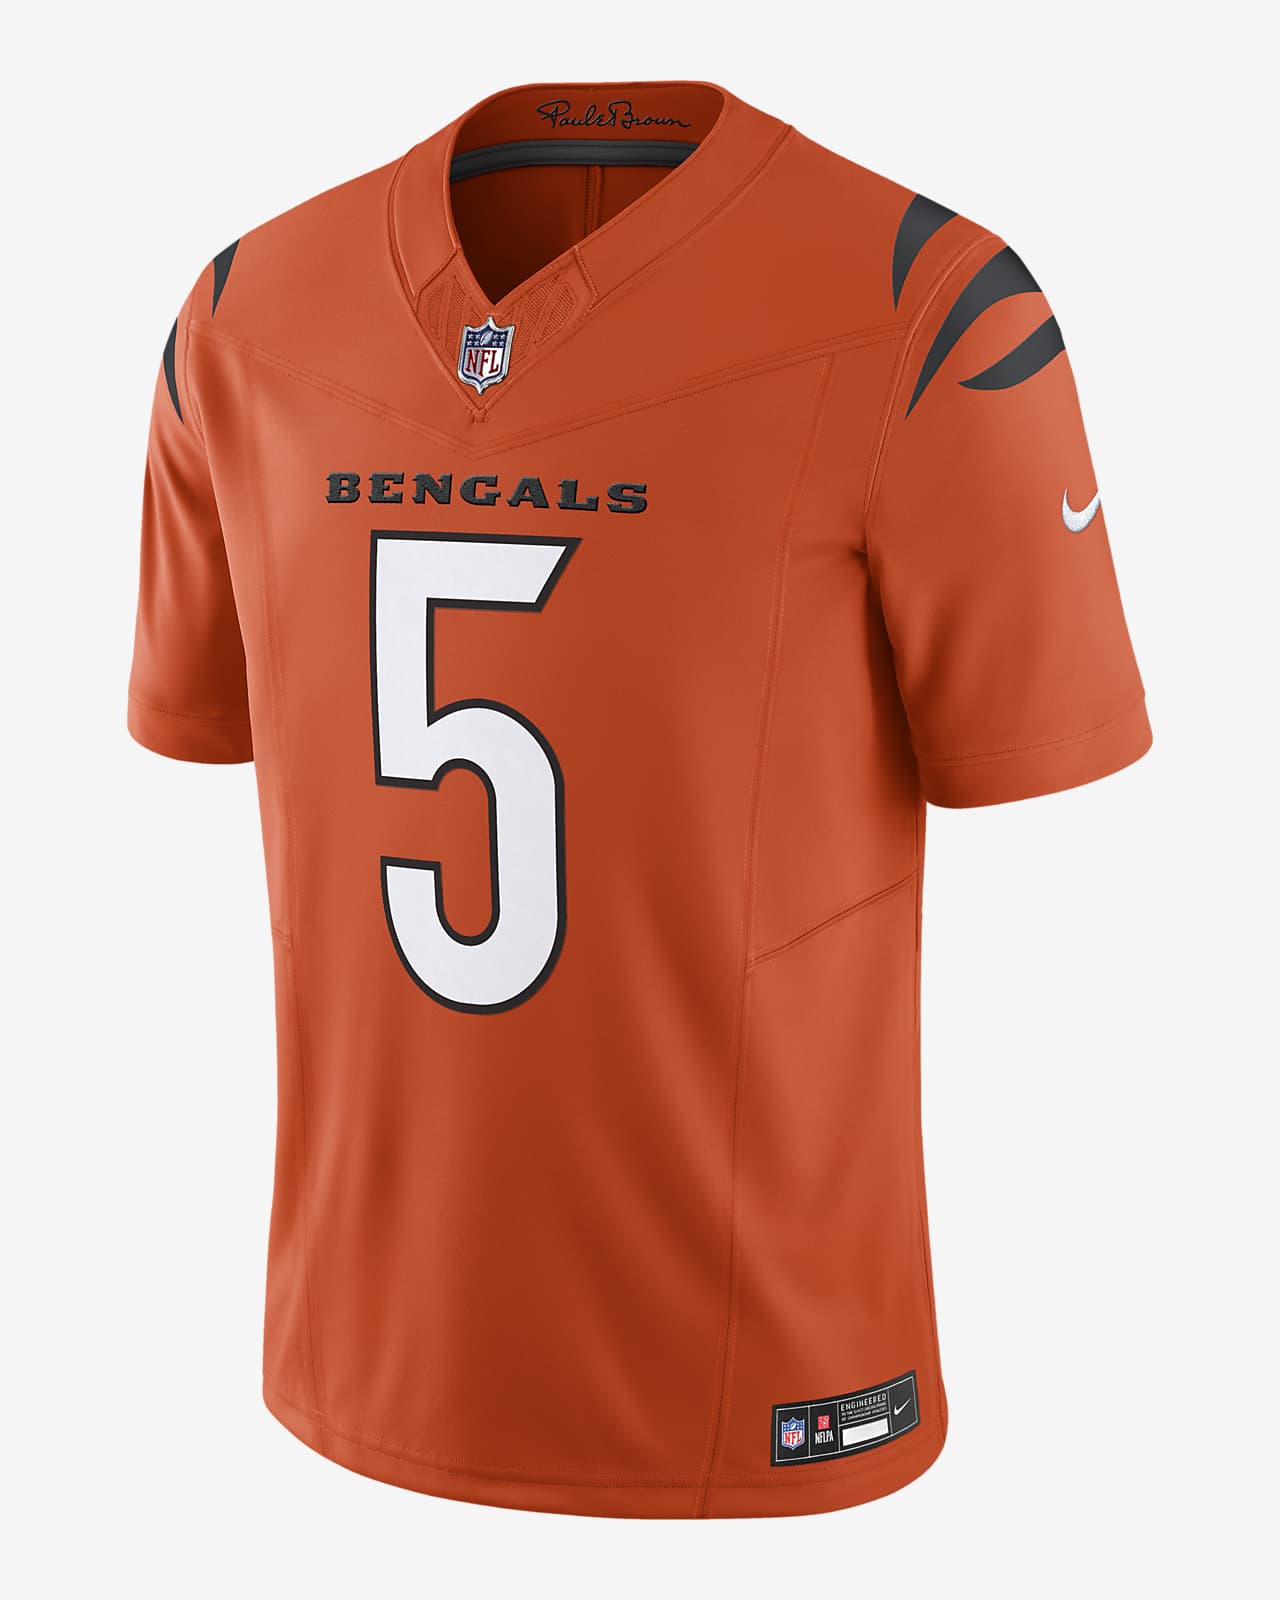 Jersey de fútbol americano Nike Dri-FIT de la NFL Limited para hombre Tee Higgins Cincinnati Bengals